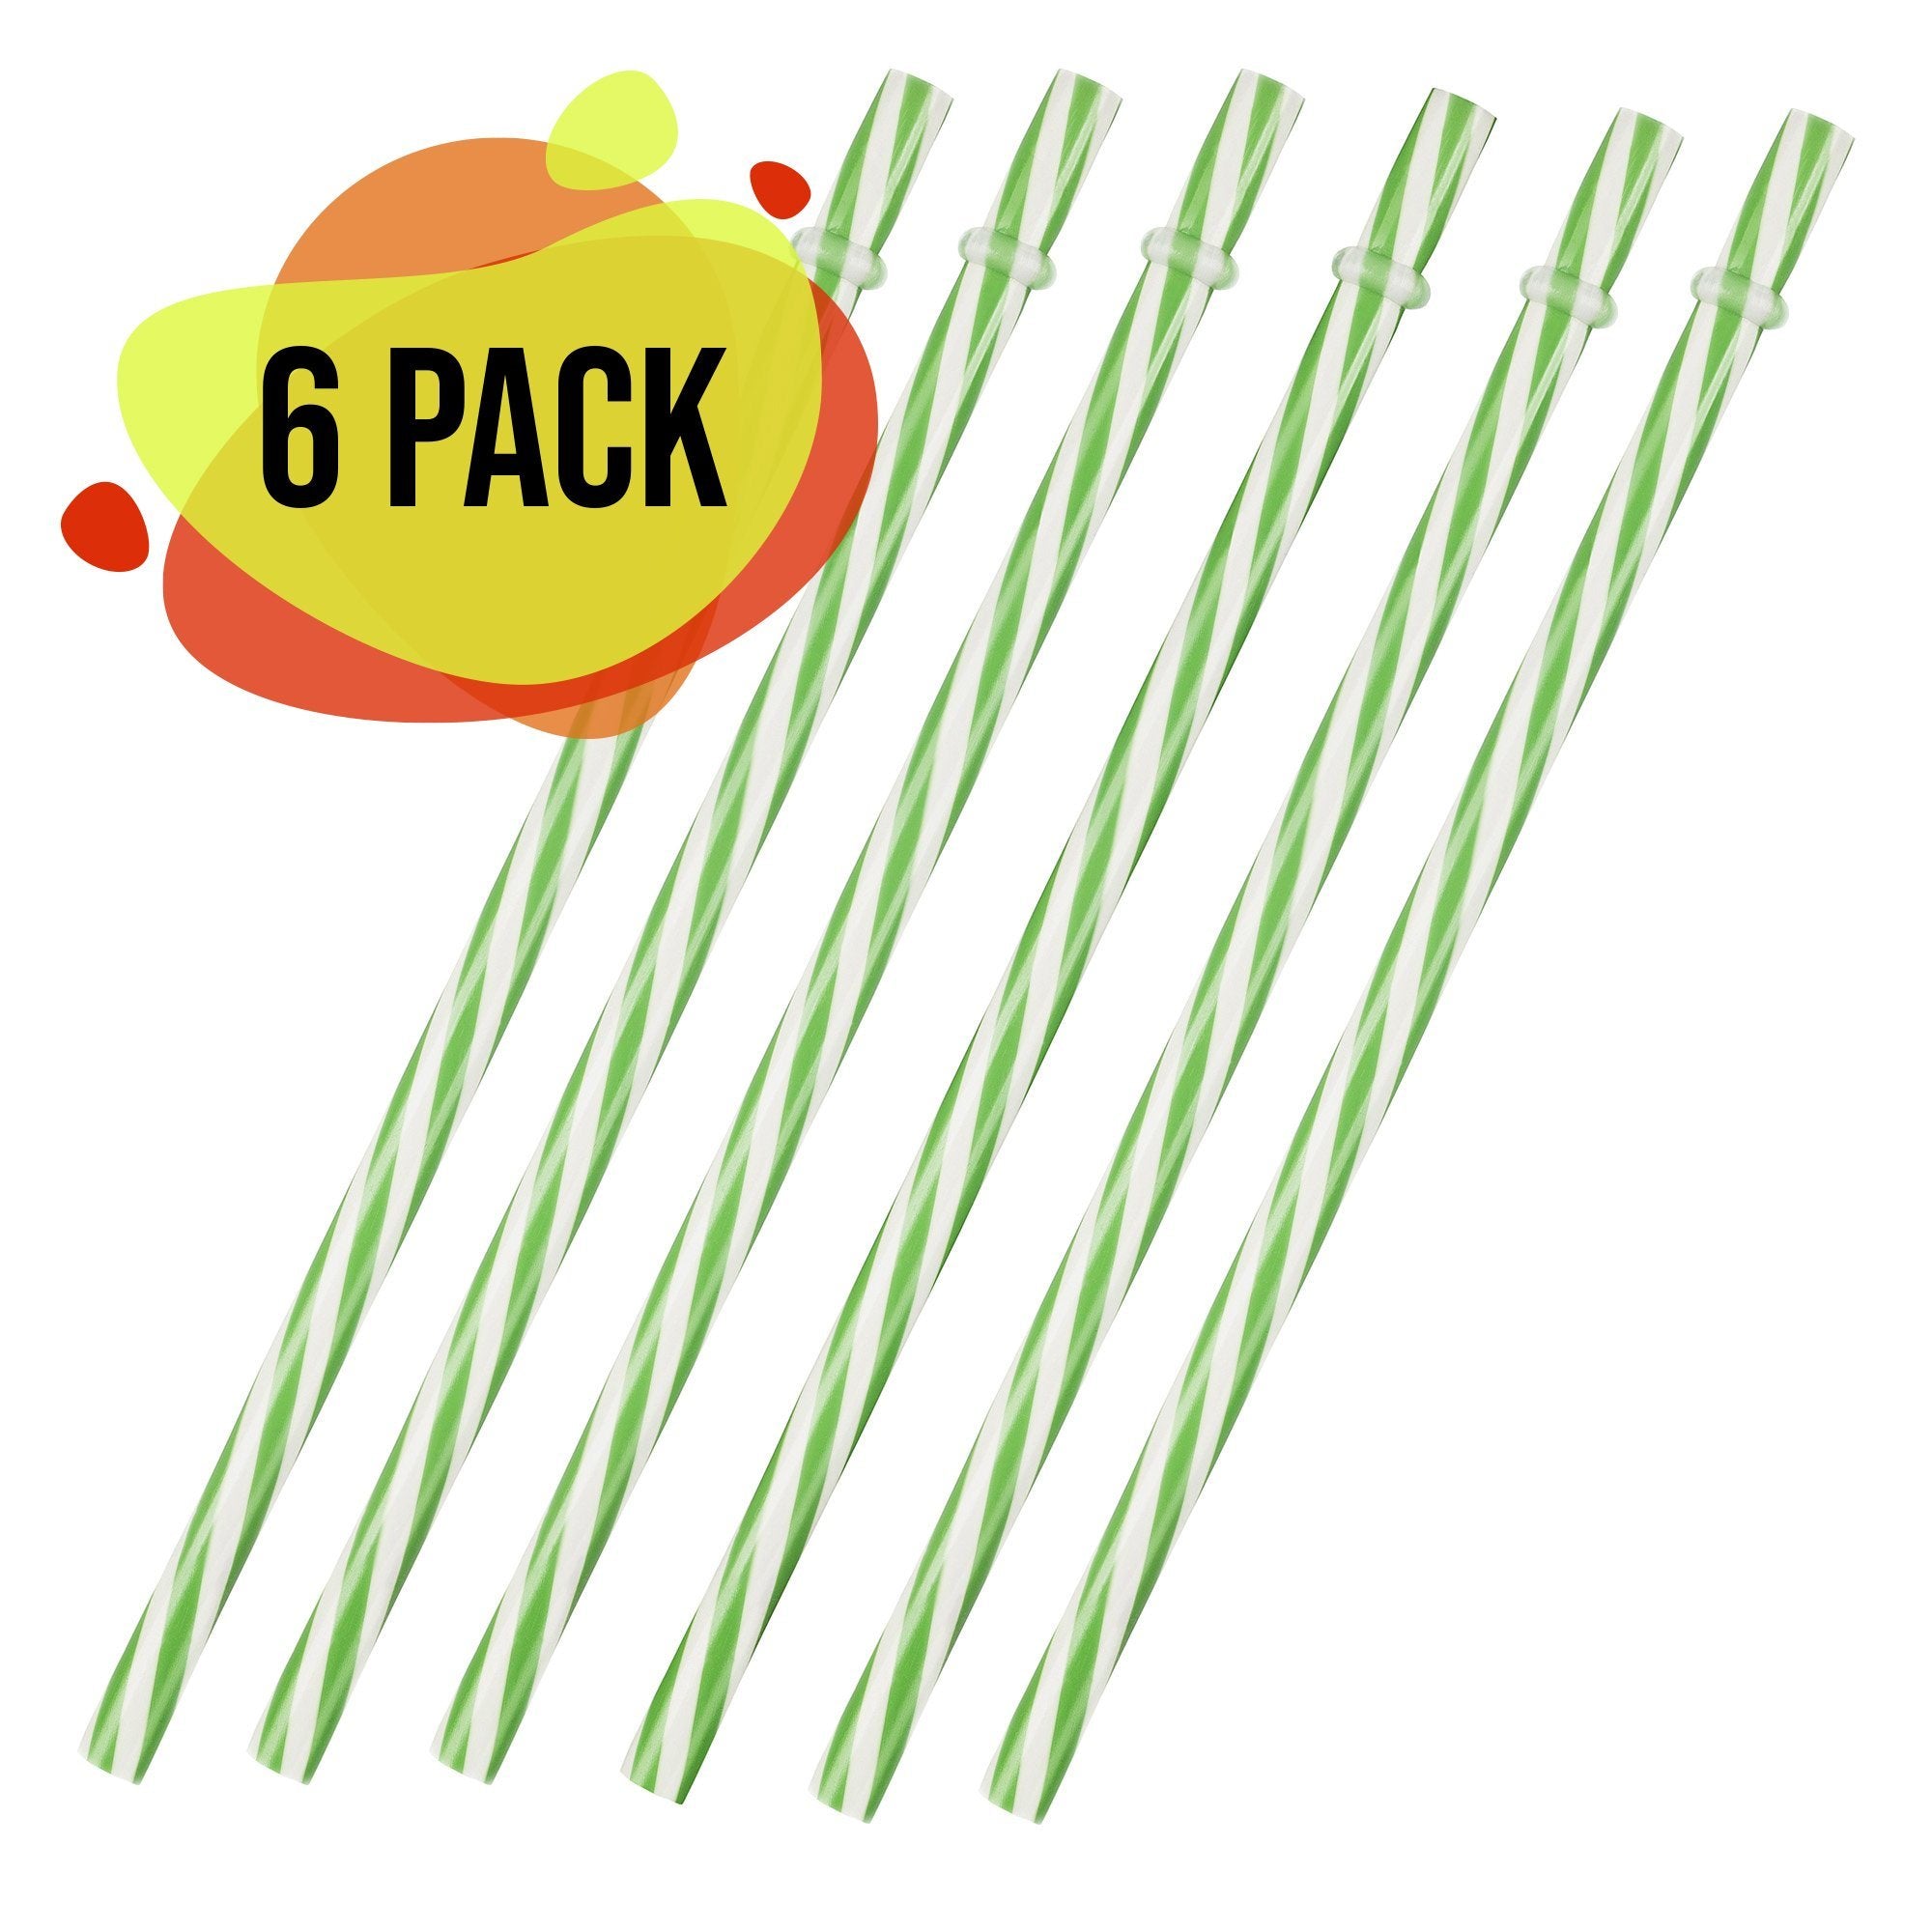 Popote Verde con Blanco Plástico 6 Pack - MarchanteMX